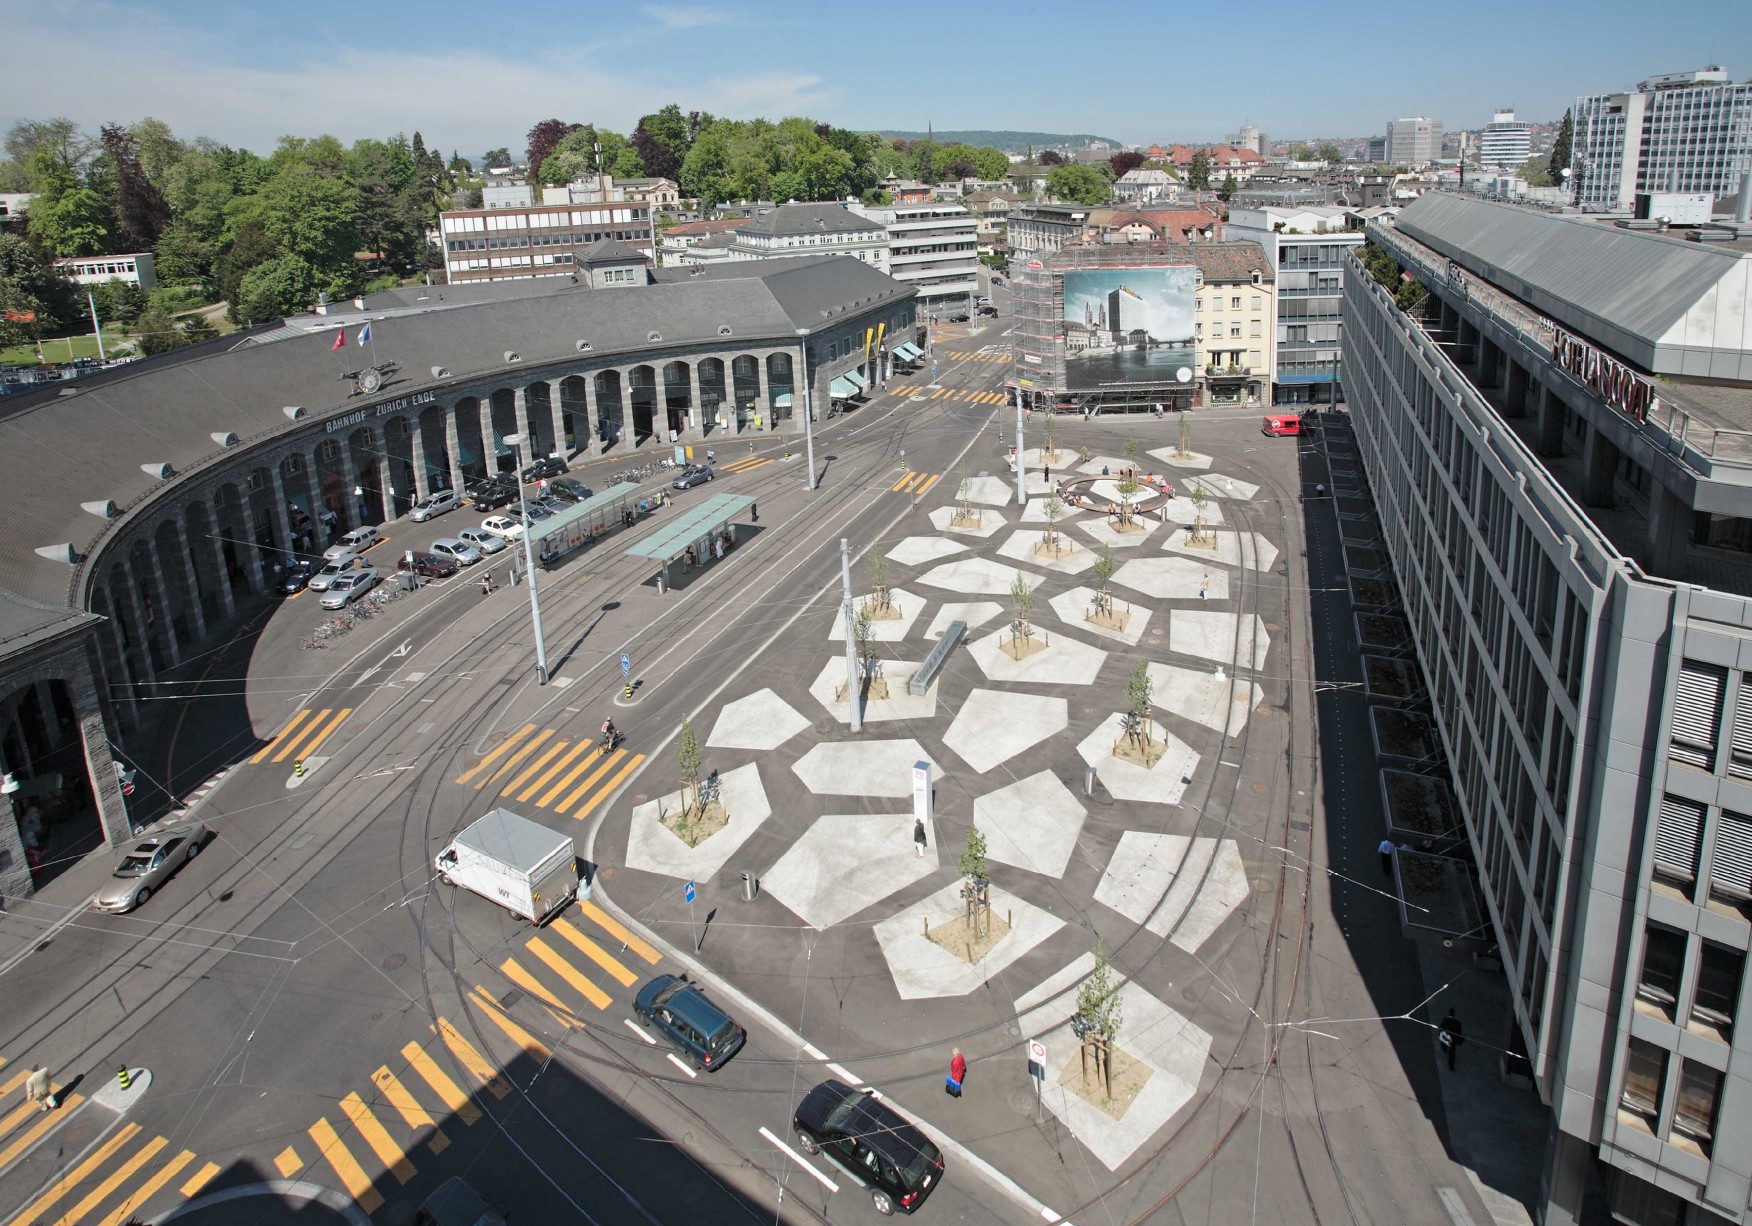 Tessinerplatz Bahnhof Enge. Tramwendeschlaufe in angrenzenden Platz integriert. (Foto: Beat Bühler)